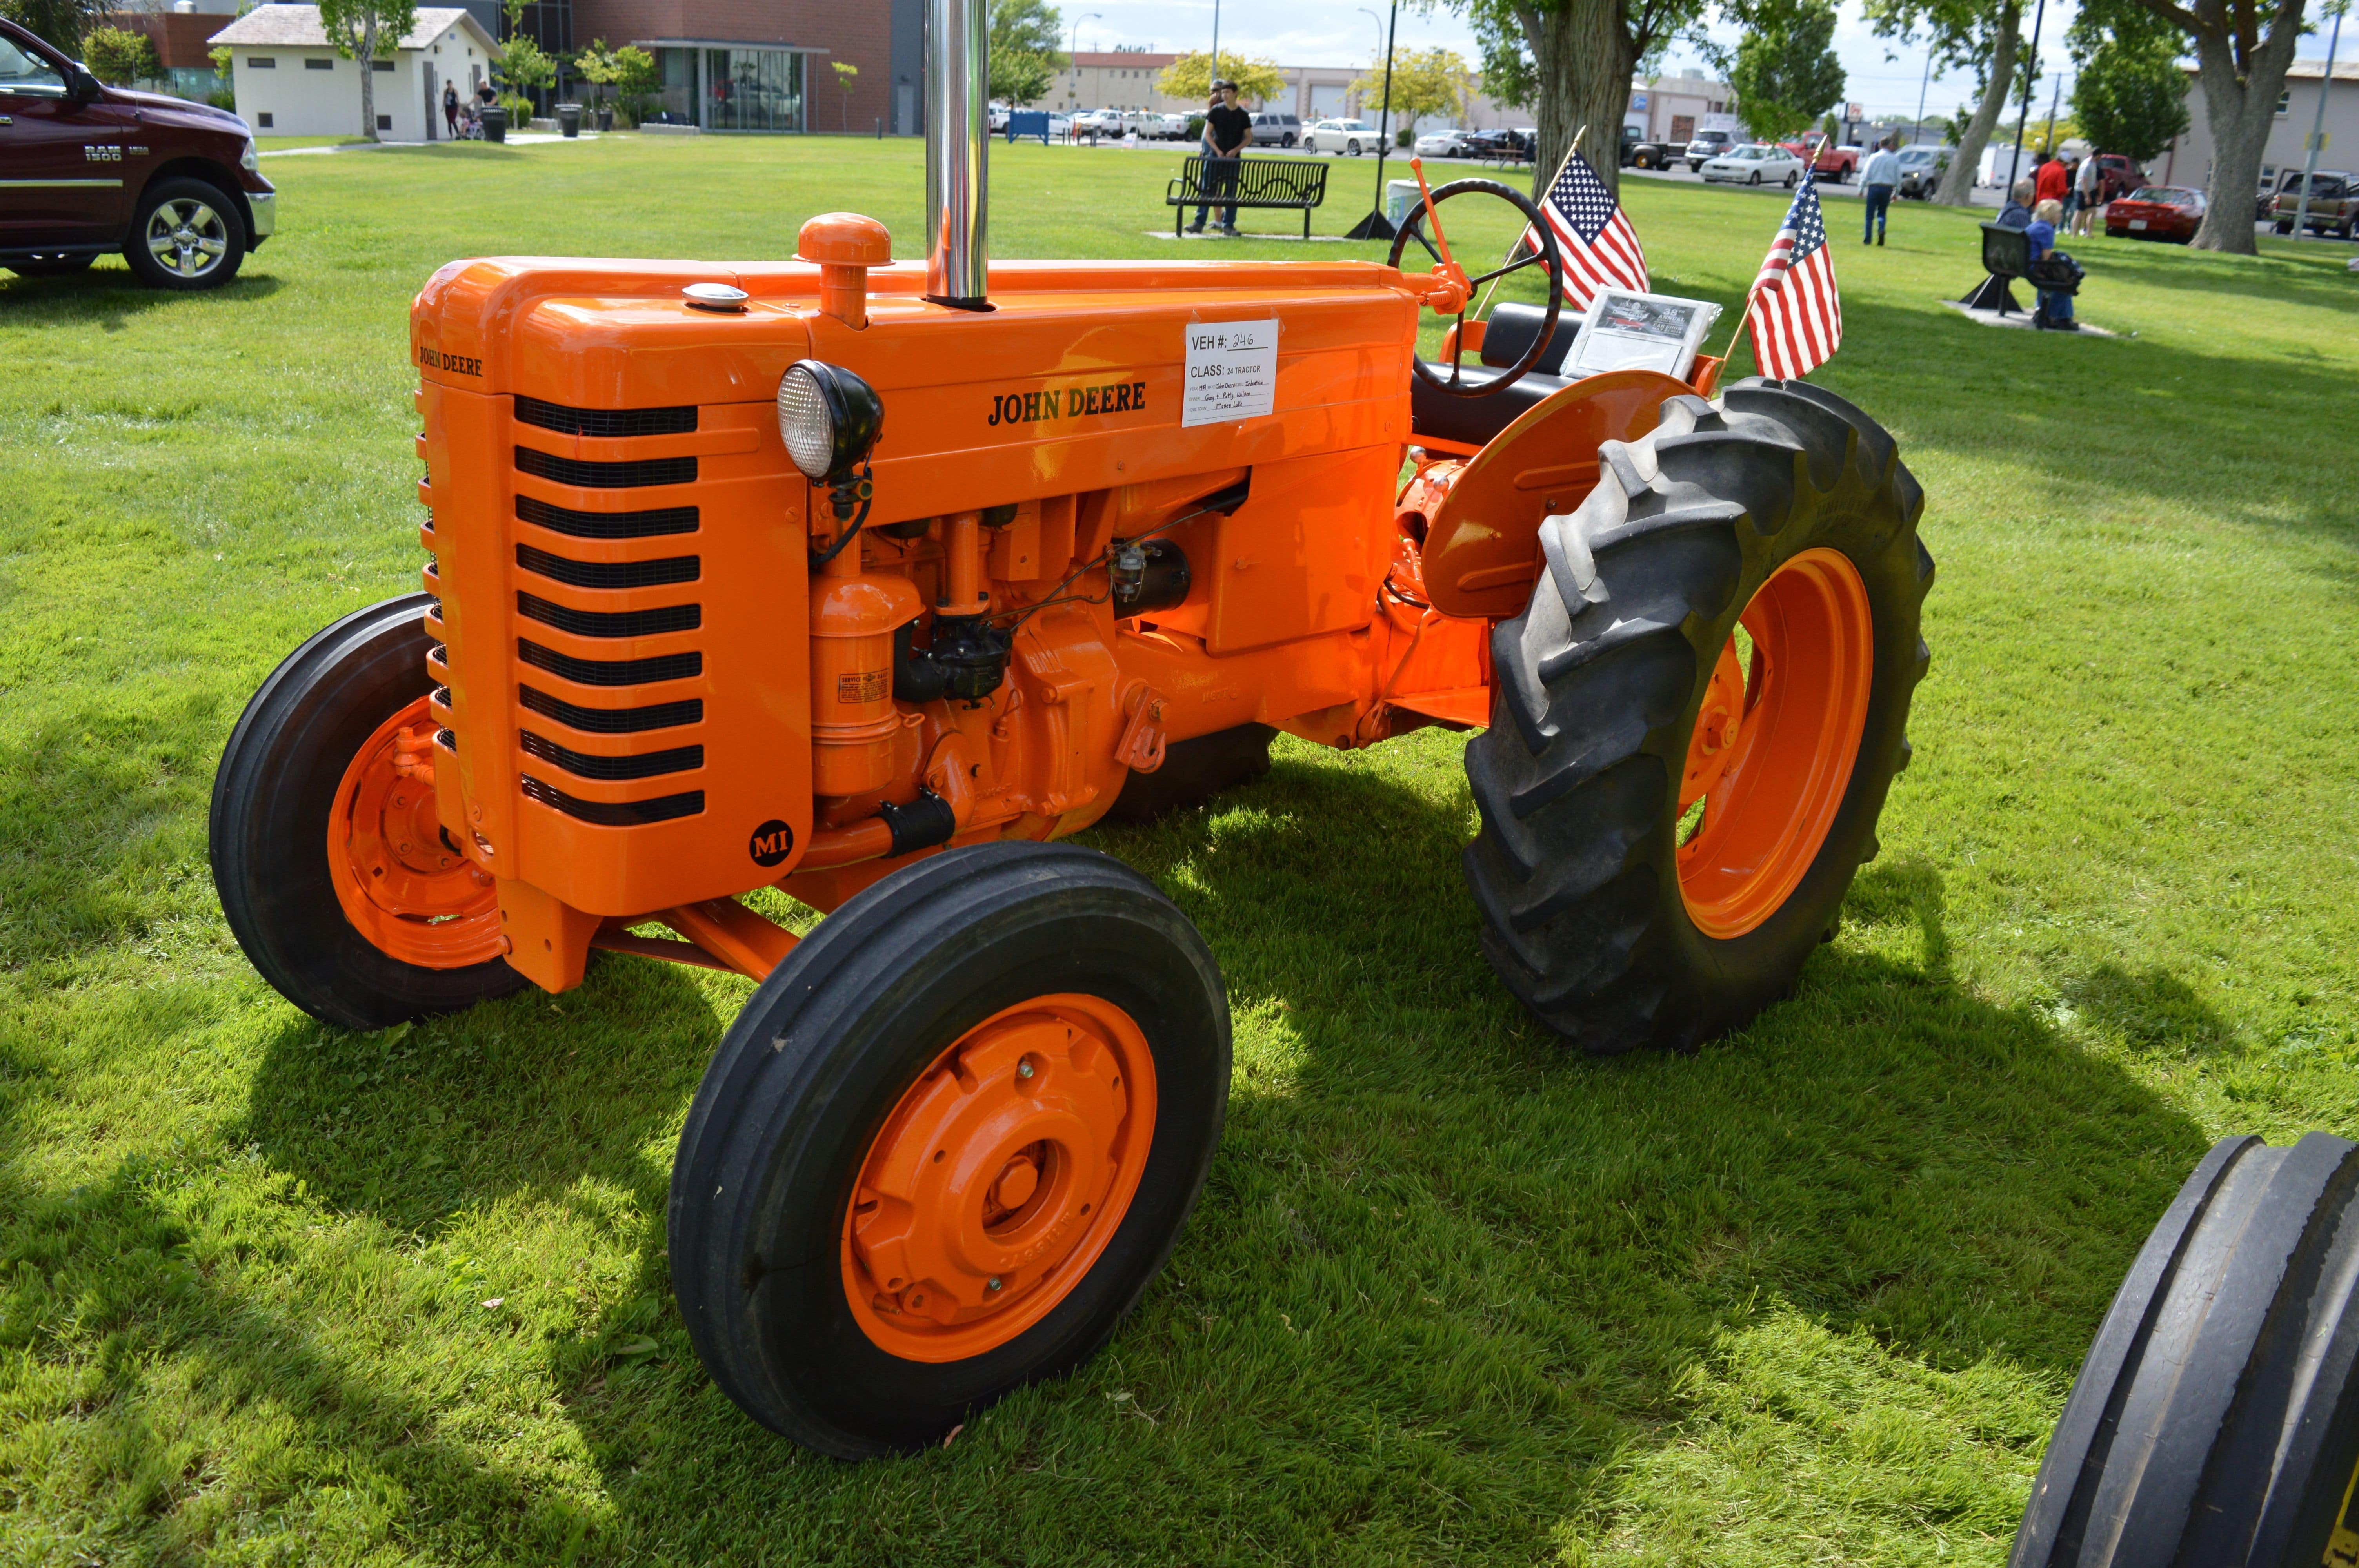 1951 John Deere Industrial - Best Tractor - Gary Wilson